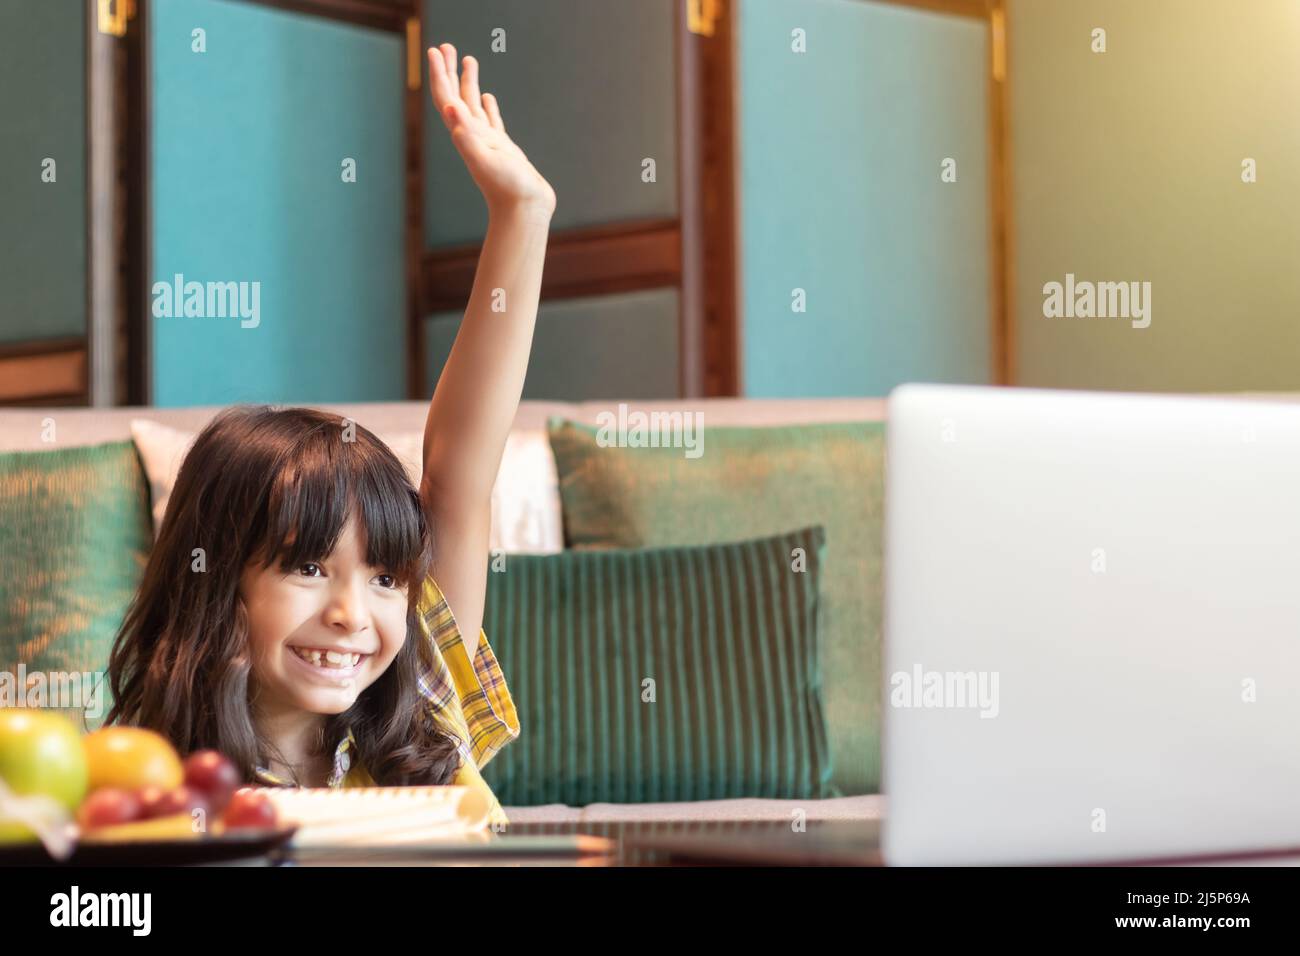 studente che studia online alza la mano per rispondere alle domande dell'insegnante in classe online. concetto di live interattivo, comunicazione e risposta di apprendimento Foto Stock